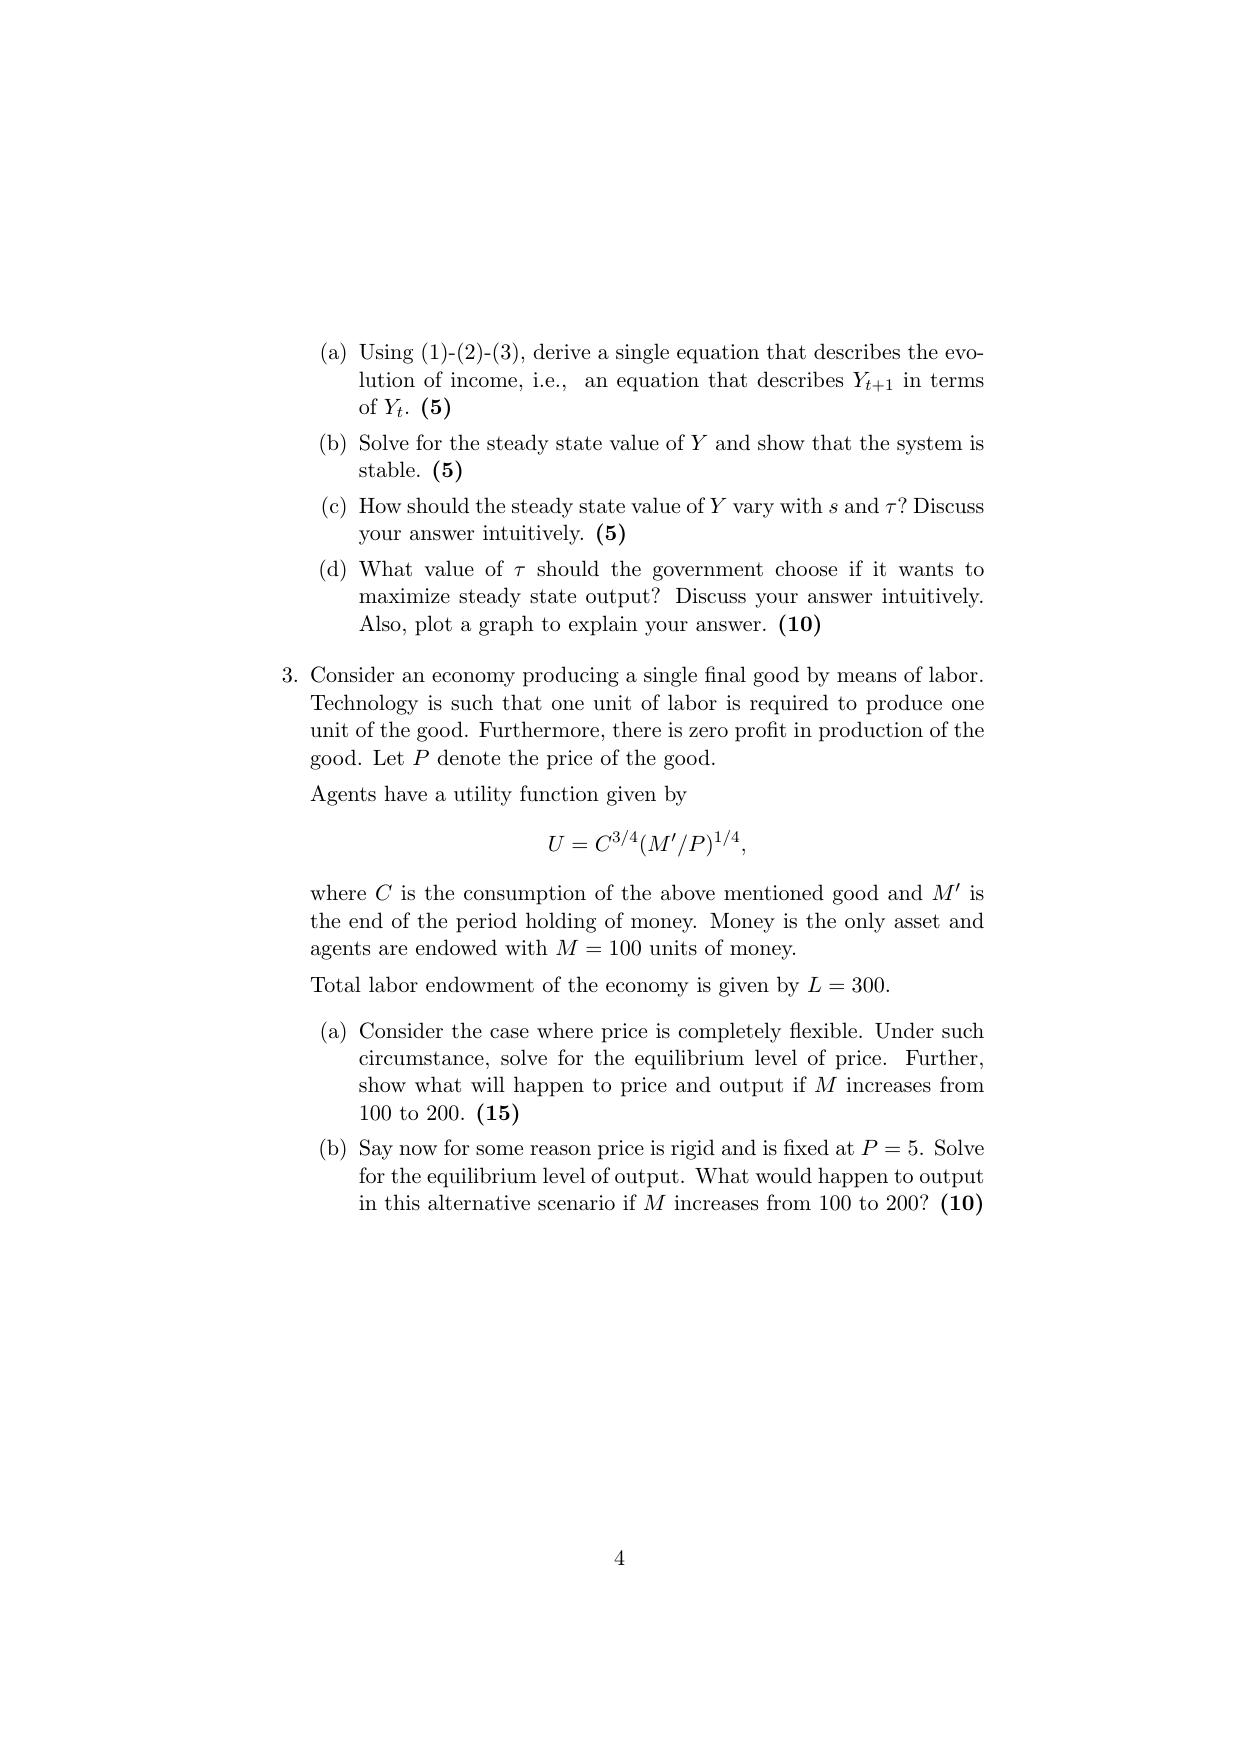 ISI Admission Test JRF in Quantitative Economics QEB 2019 Sample Paper - Page 4